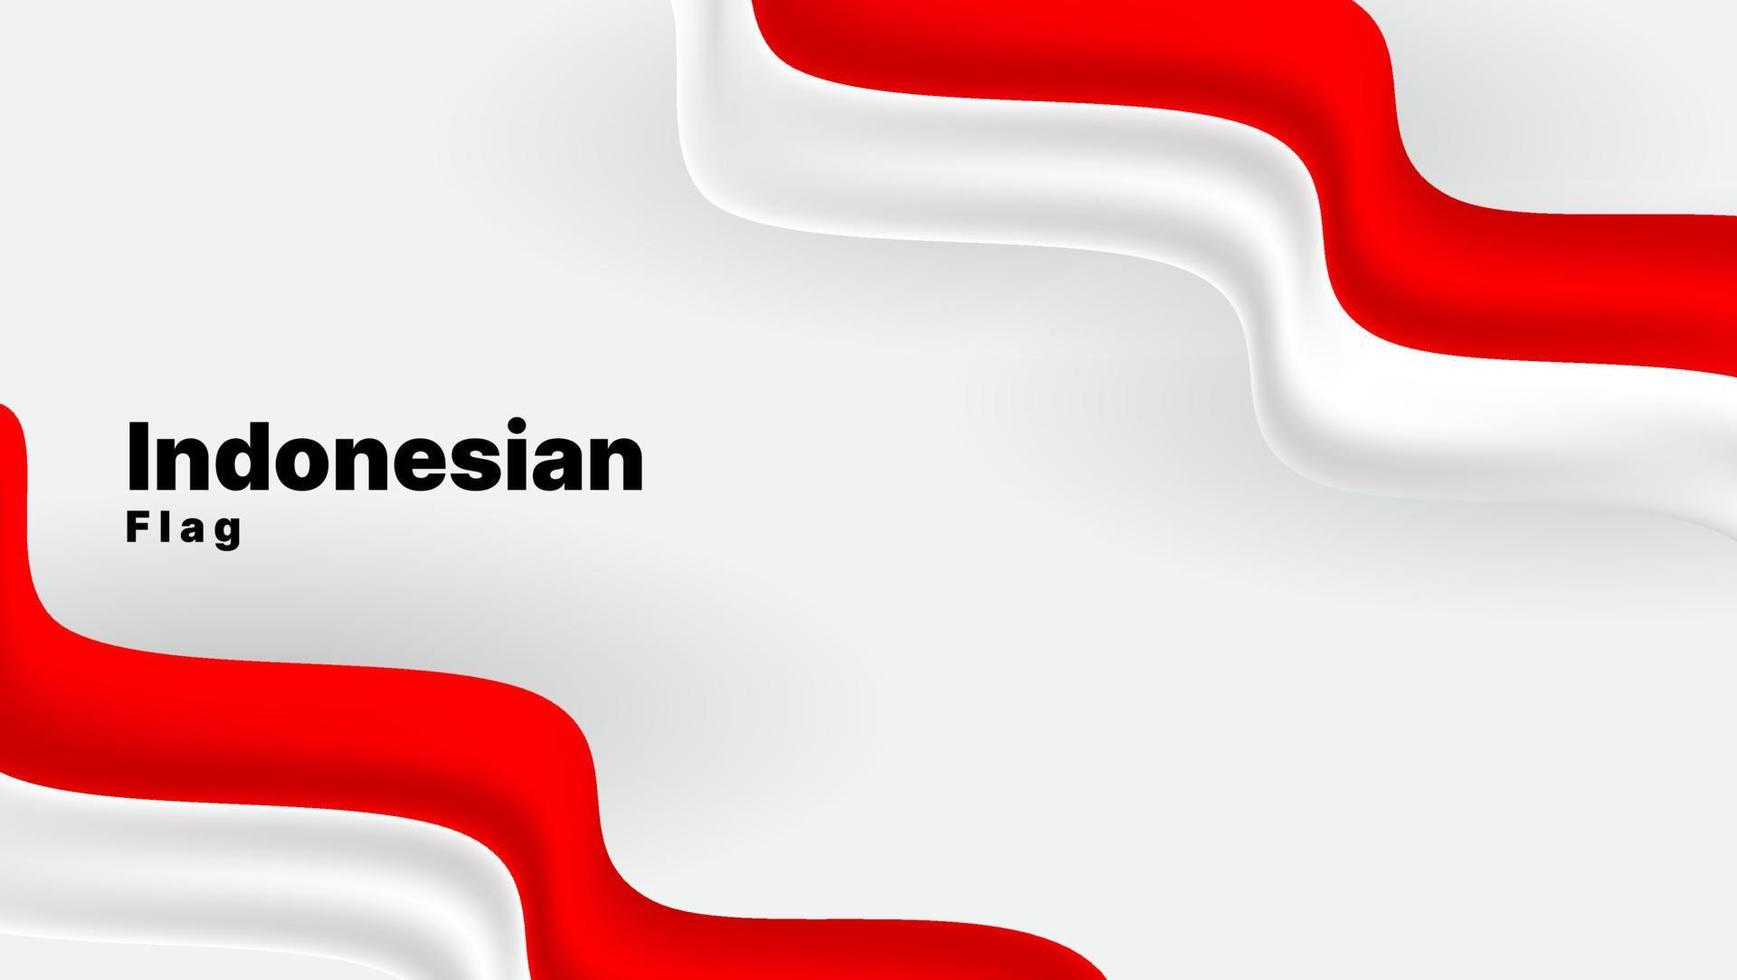 fond patriotique avec drapeau indonésien ondulé. couleur rouge et blanche. illustration vectorielle vecteur